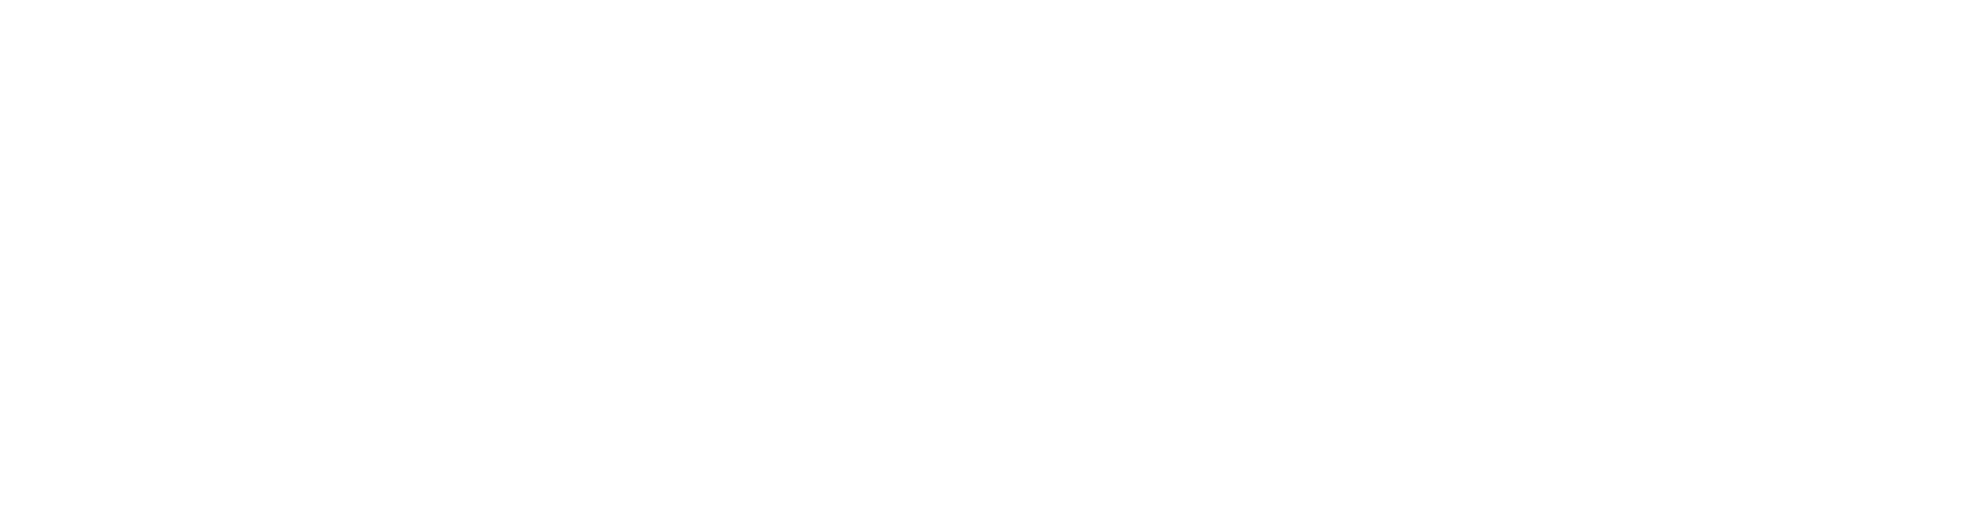 Cosmic Coffee Company